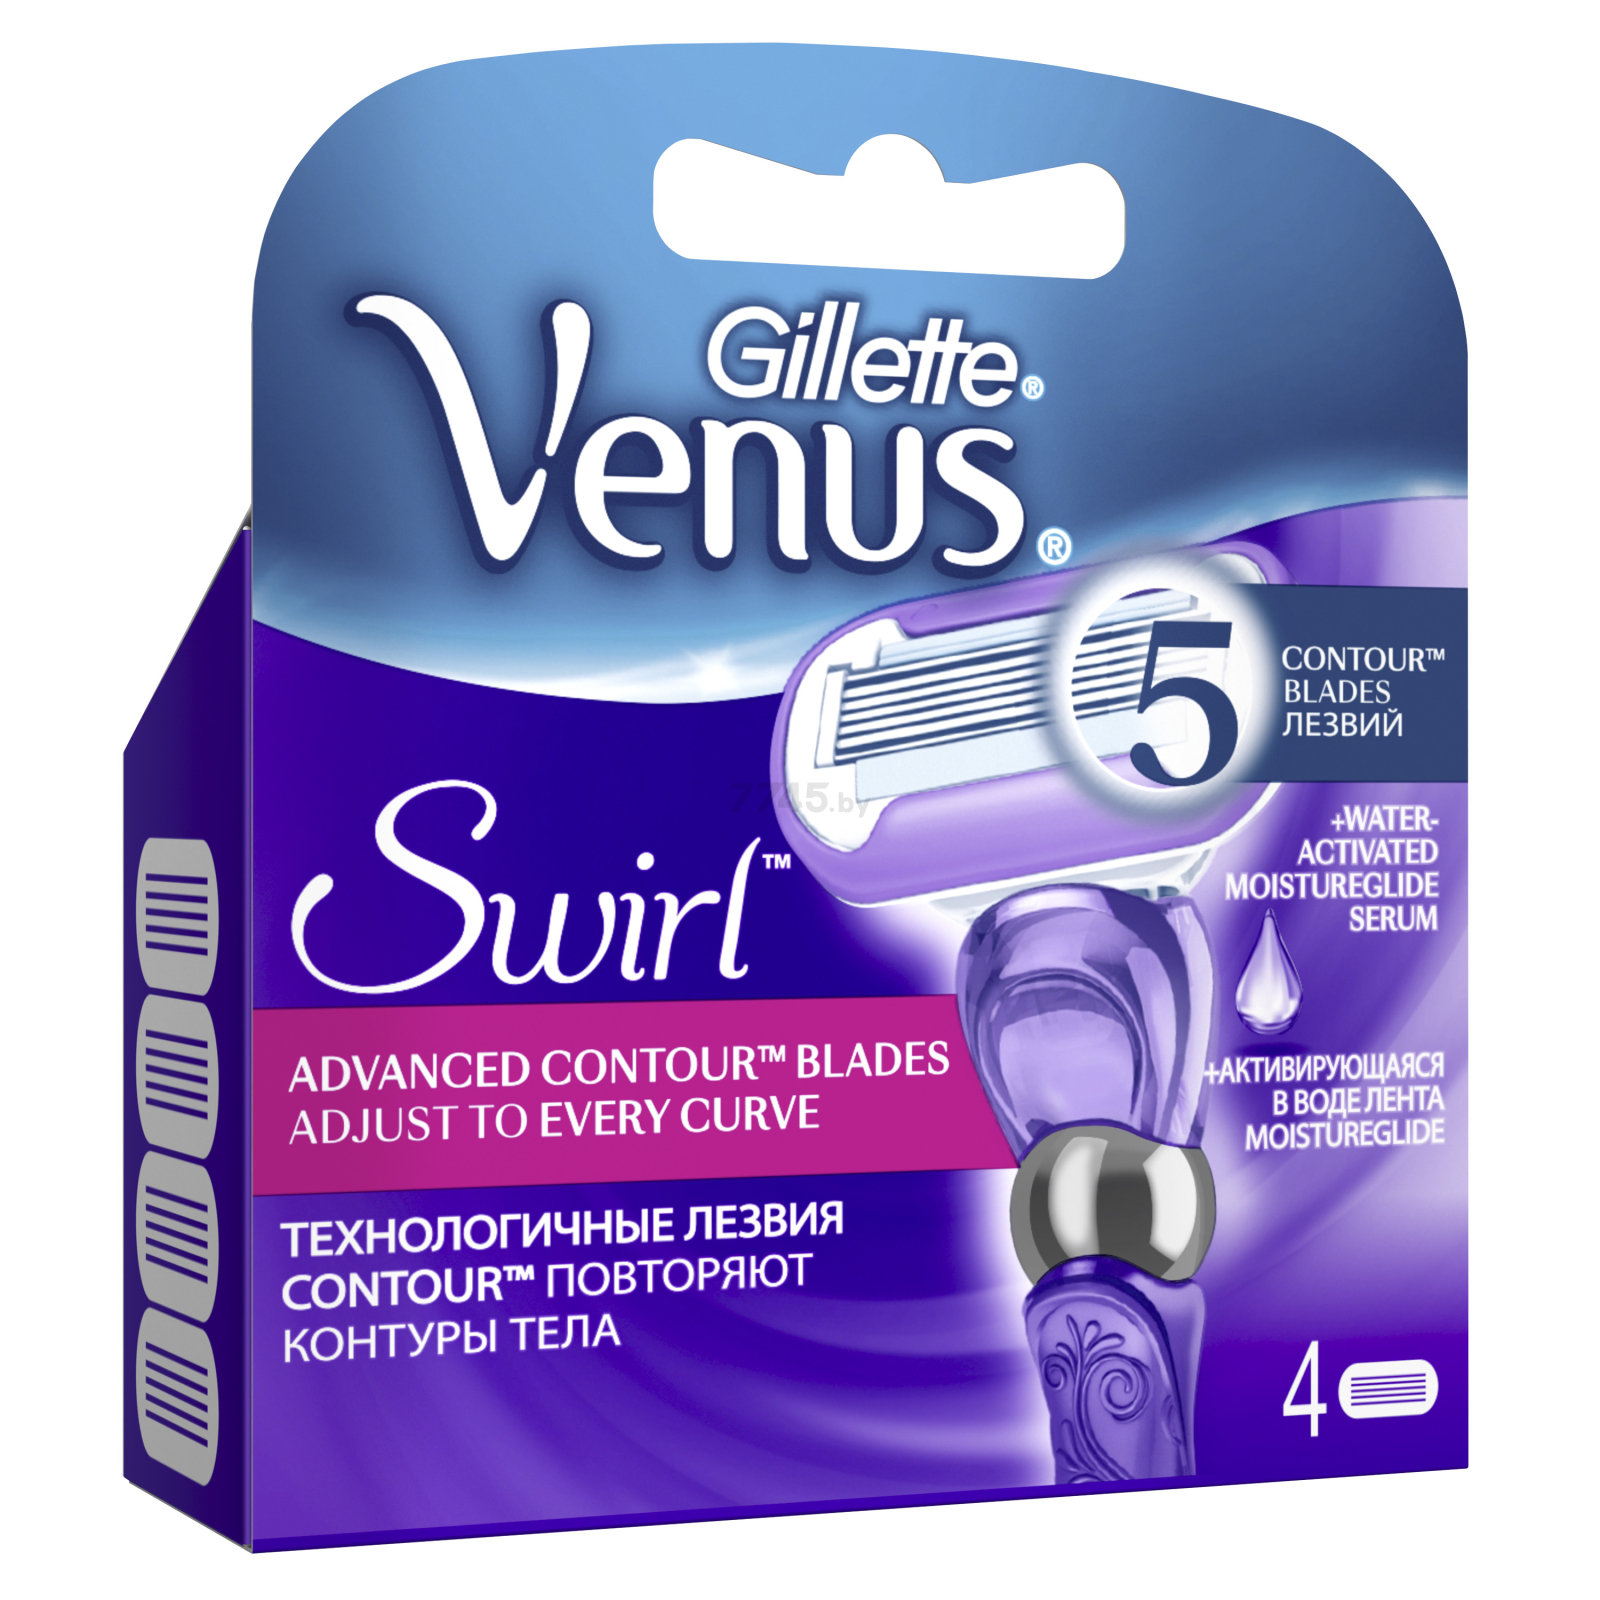 Кассеты сменные GILLETTE Venus Swirl 4 штуки (7702018401147) - Фото 3